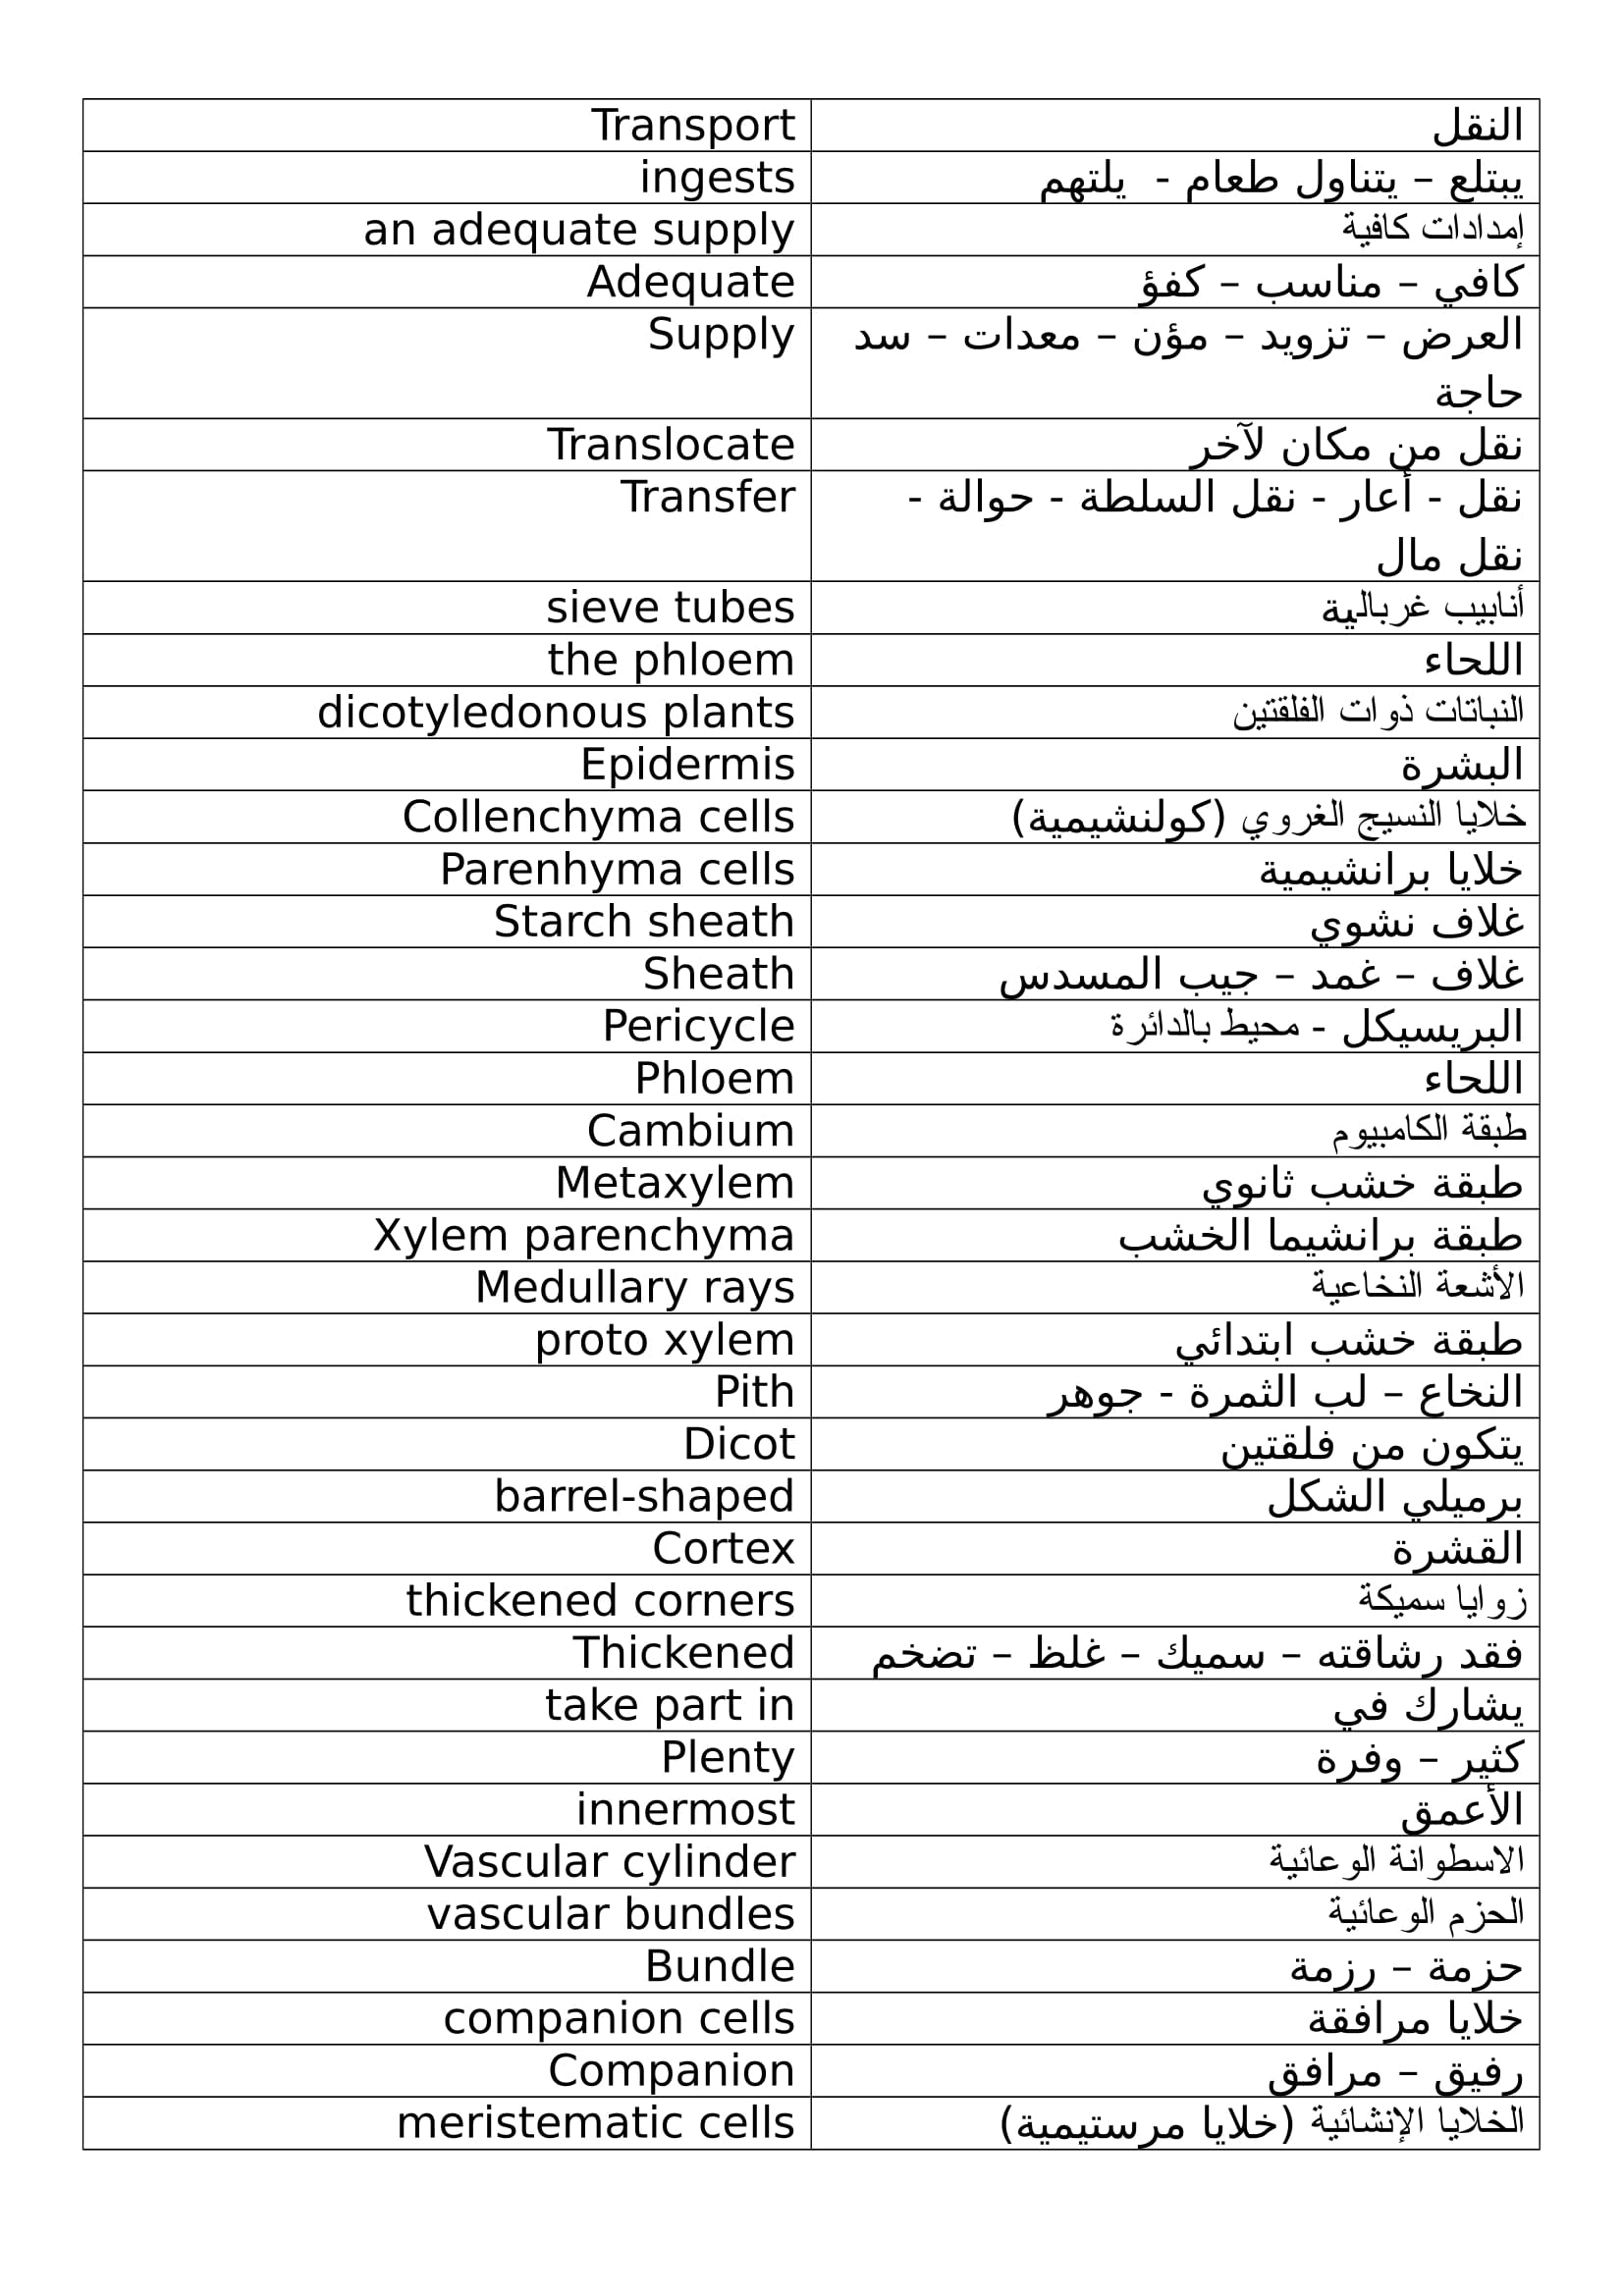 ترجمة مصطلحات والكلمات الصعبة لفصل النقل فى Biology للصف الثانى الثانوى اللغات